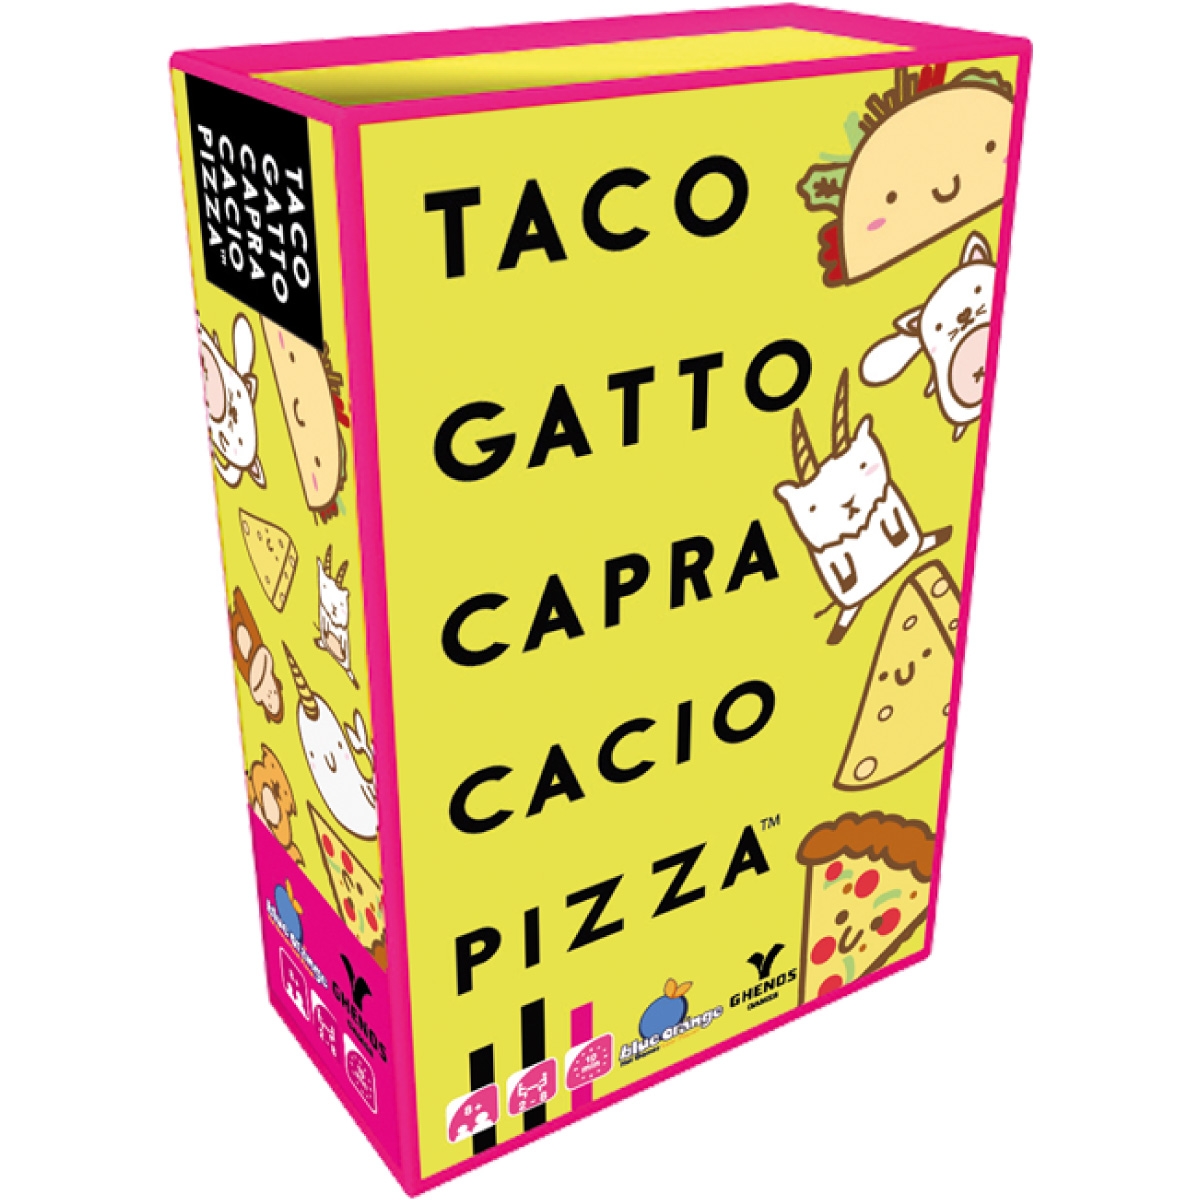 Taco Gatto Capra Cacio Pizza Partita Completa al Gioco da Tavolo